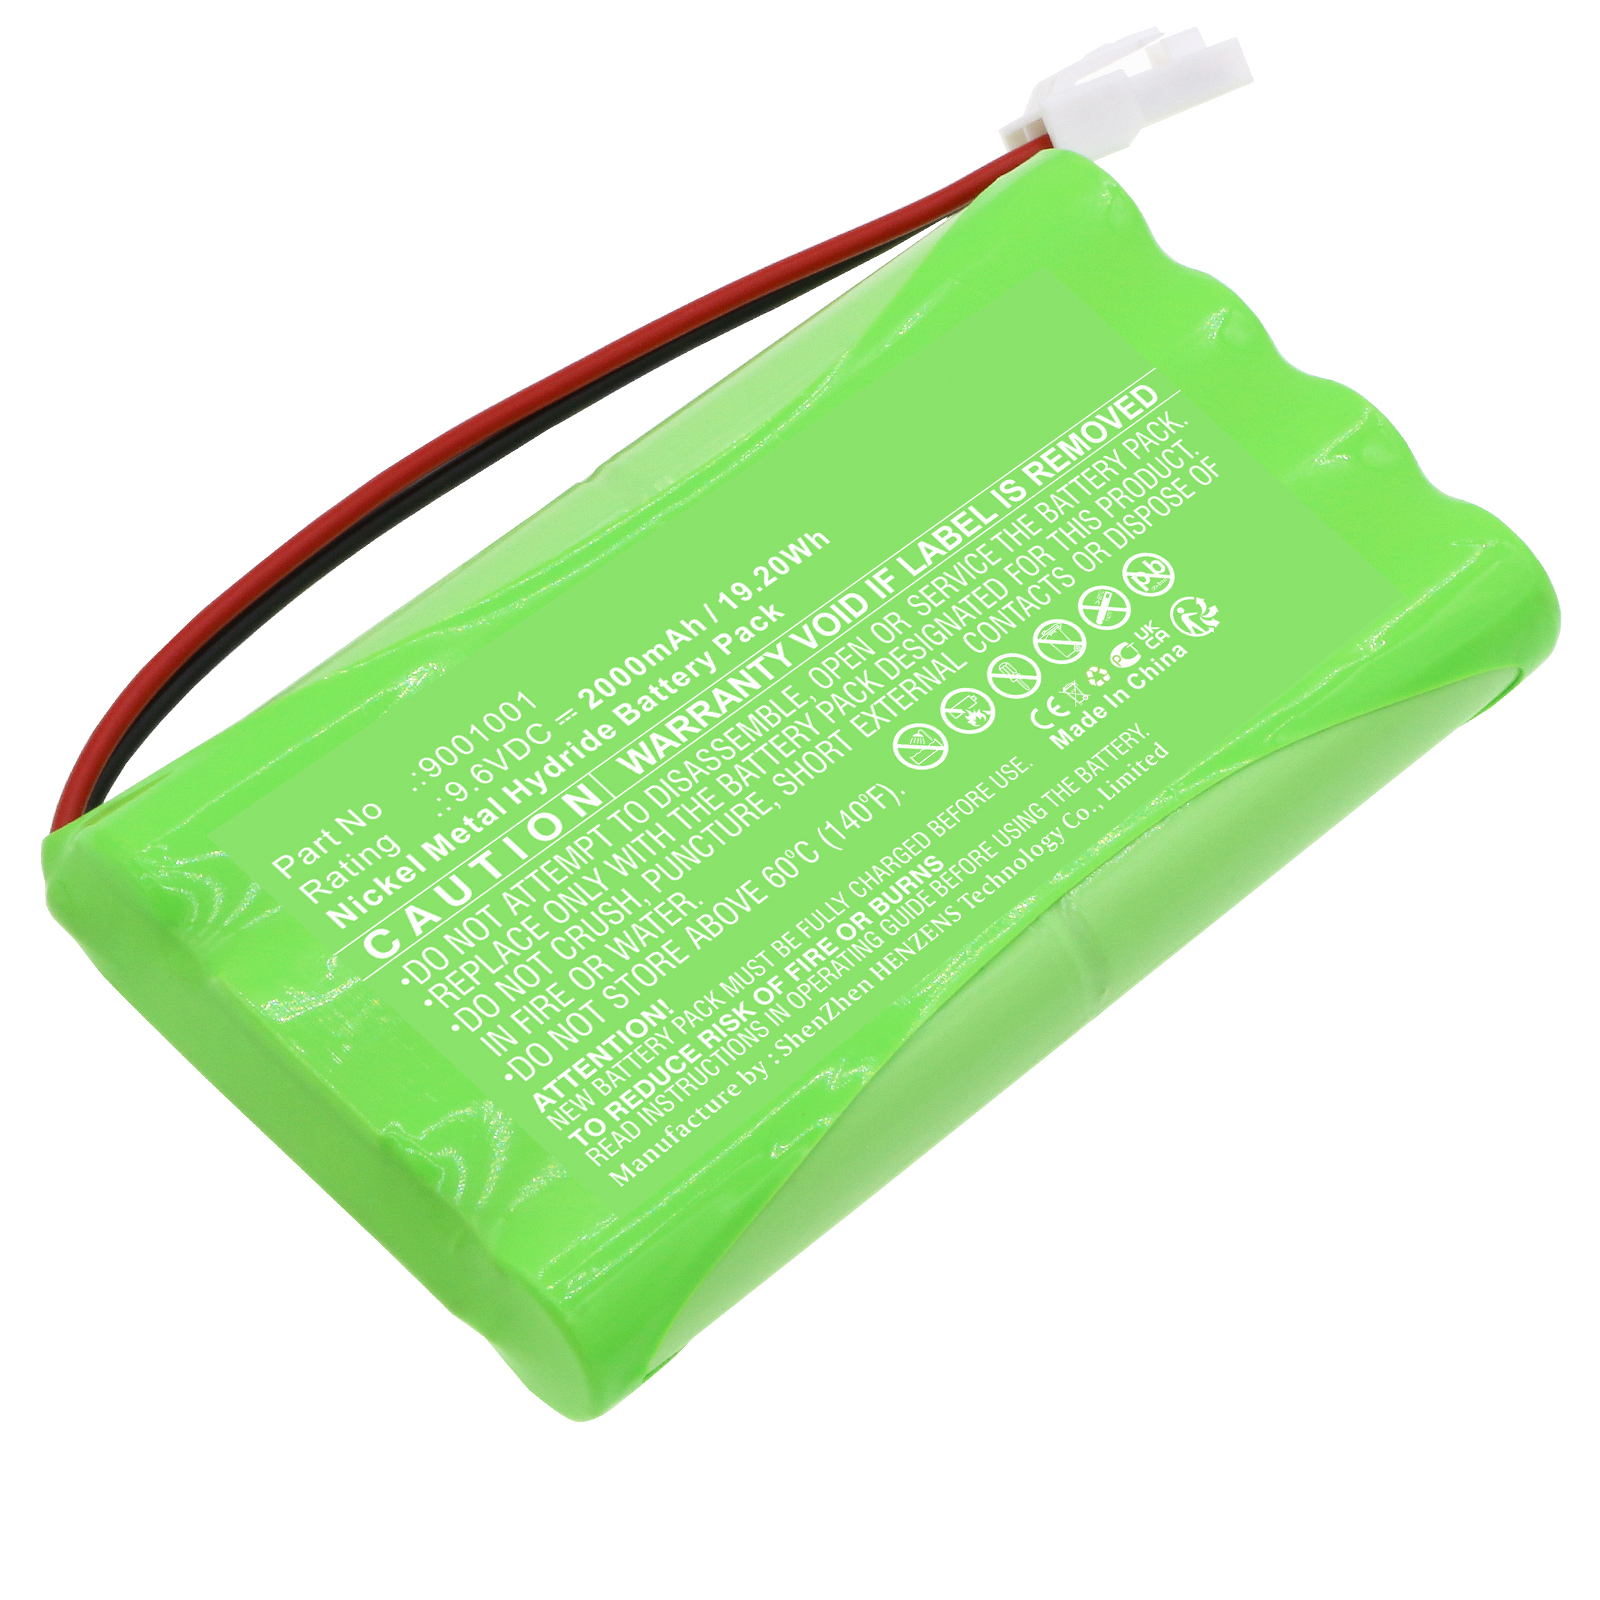 Batteries for SomfySmart Home